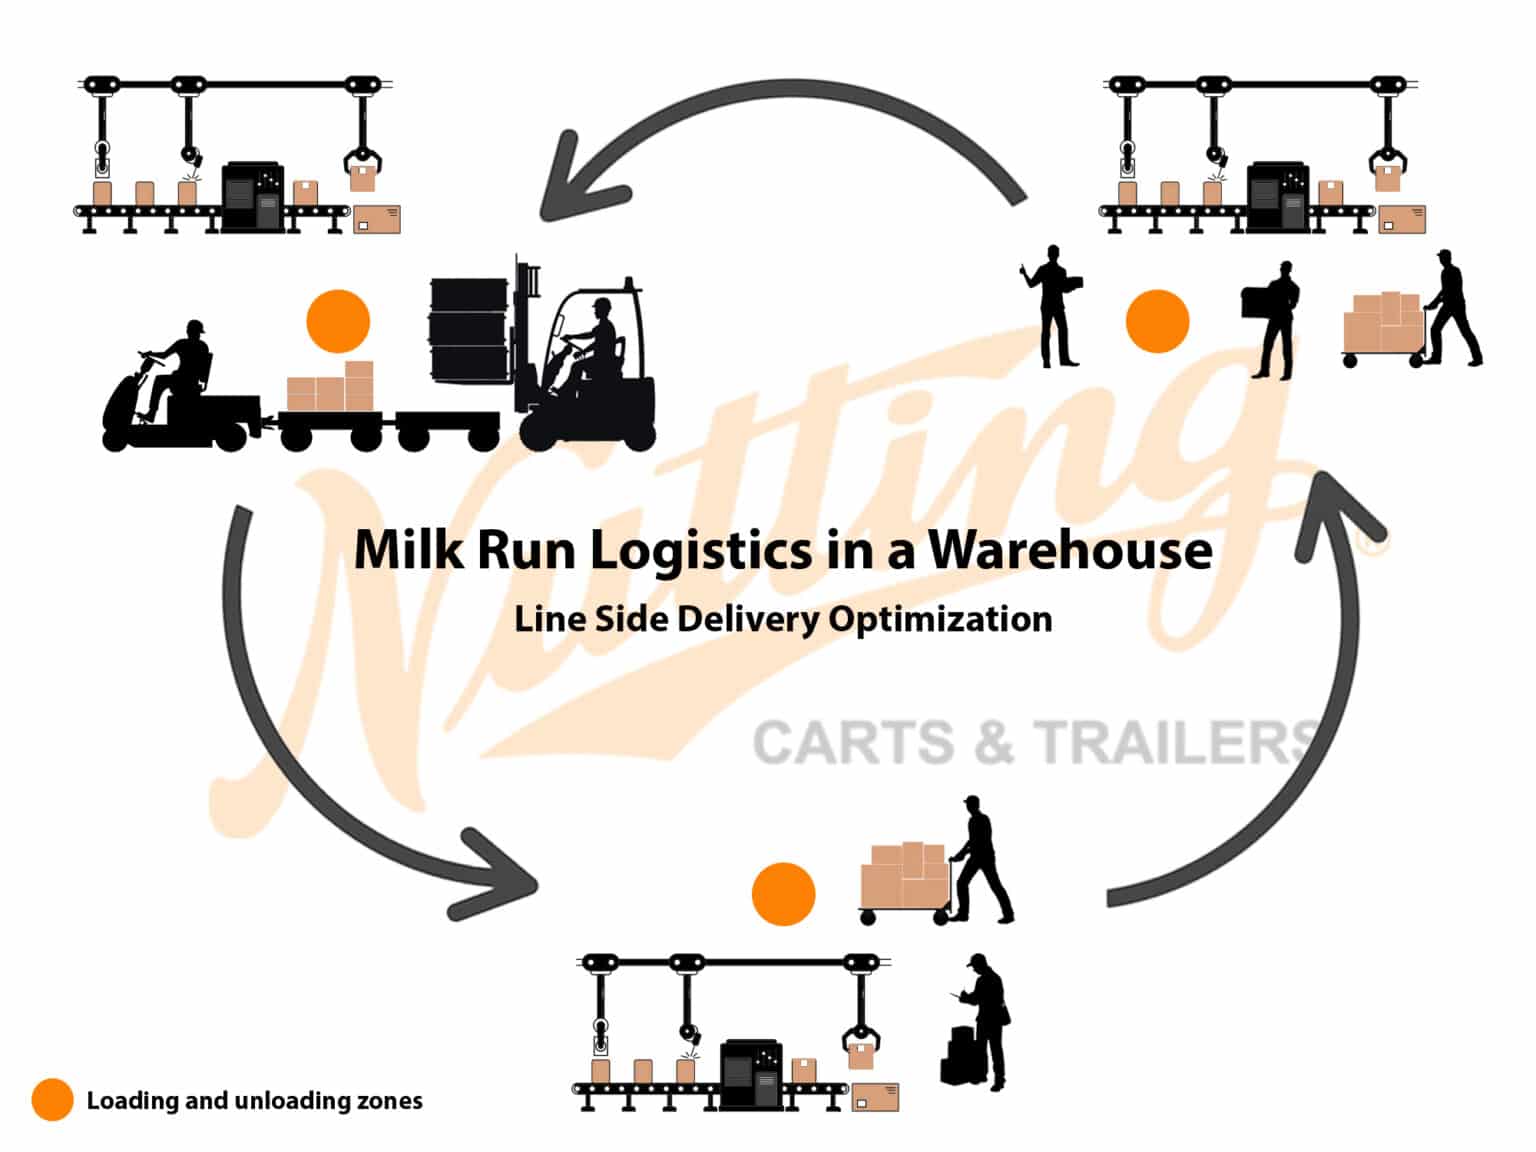 Nutting Carts help to optimize milk run logistics